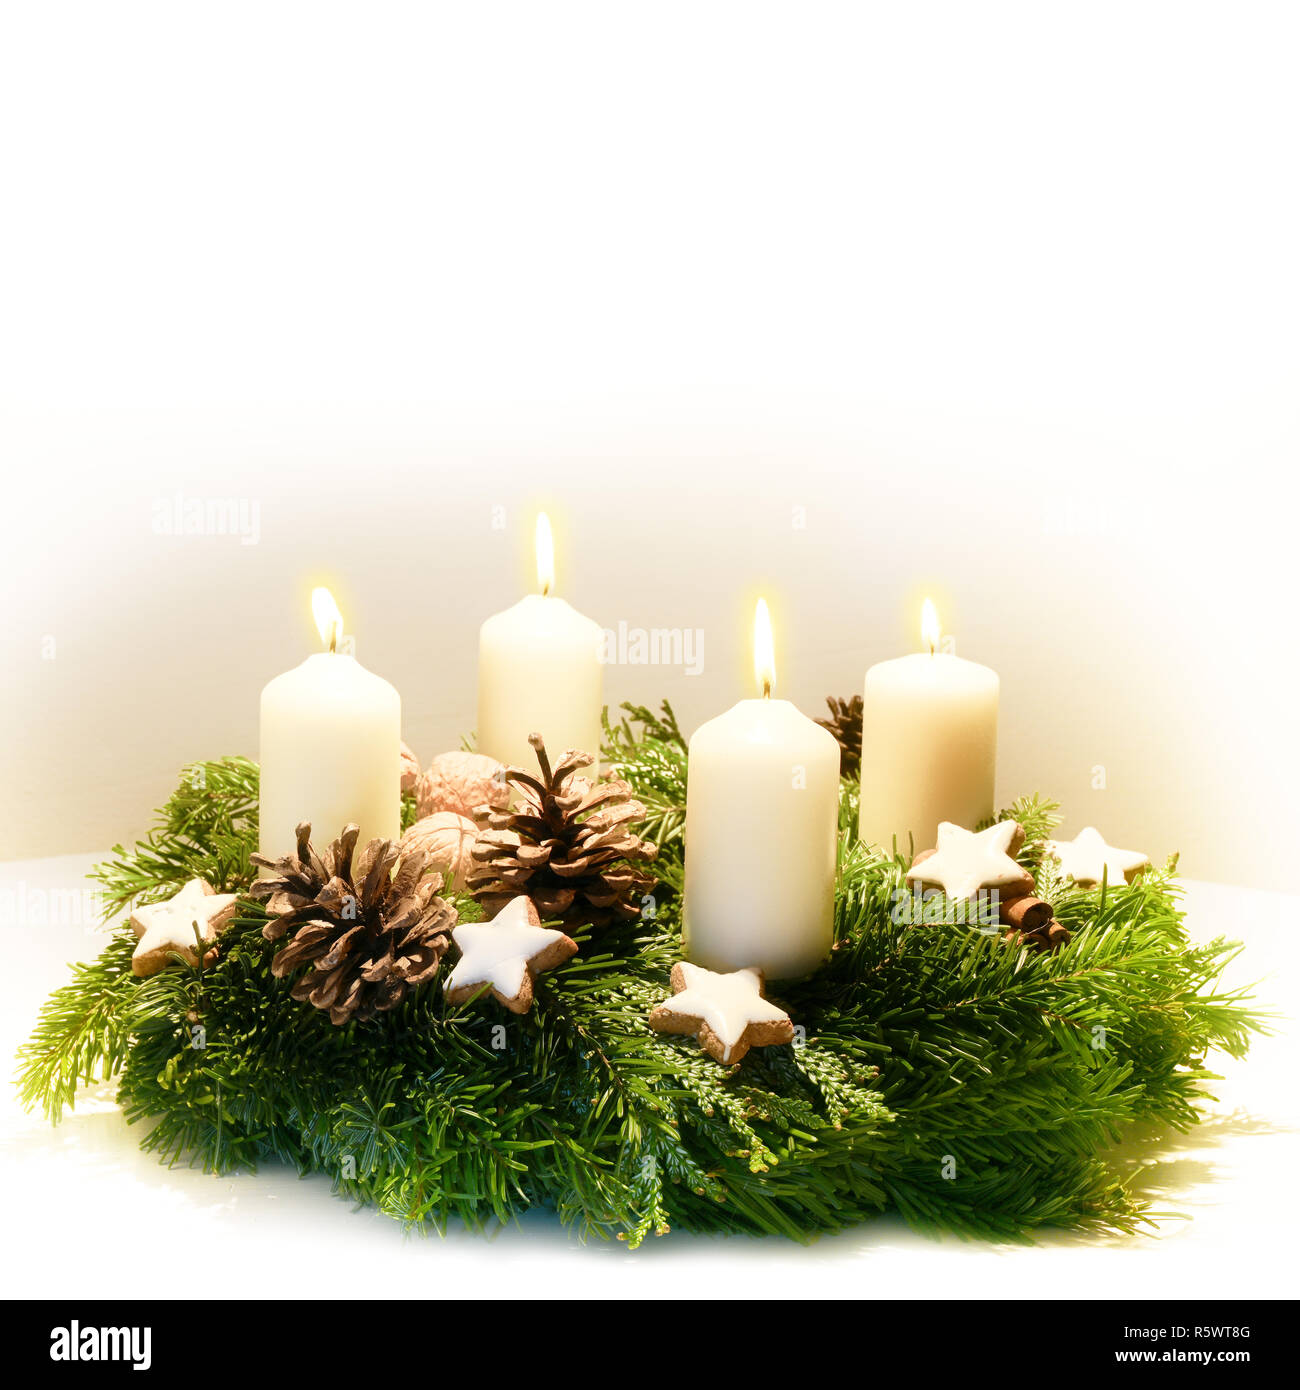 Geschmückt Adventskranz aus Tanne und immergrüne Zweige mit brennenden  weiße Kerzen für die Zeit vor Weihnachten, die hellen Hintergrund verblasst  zu weiss Stockfotografie - Alamy